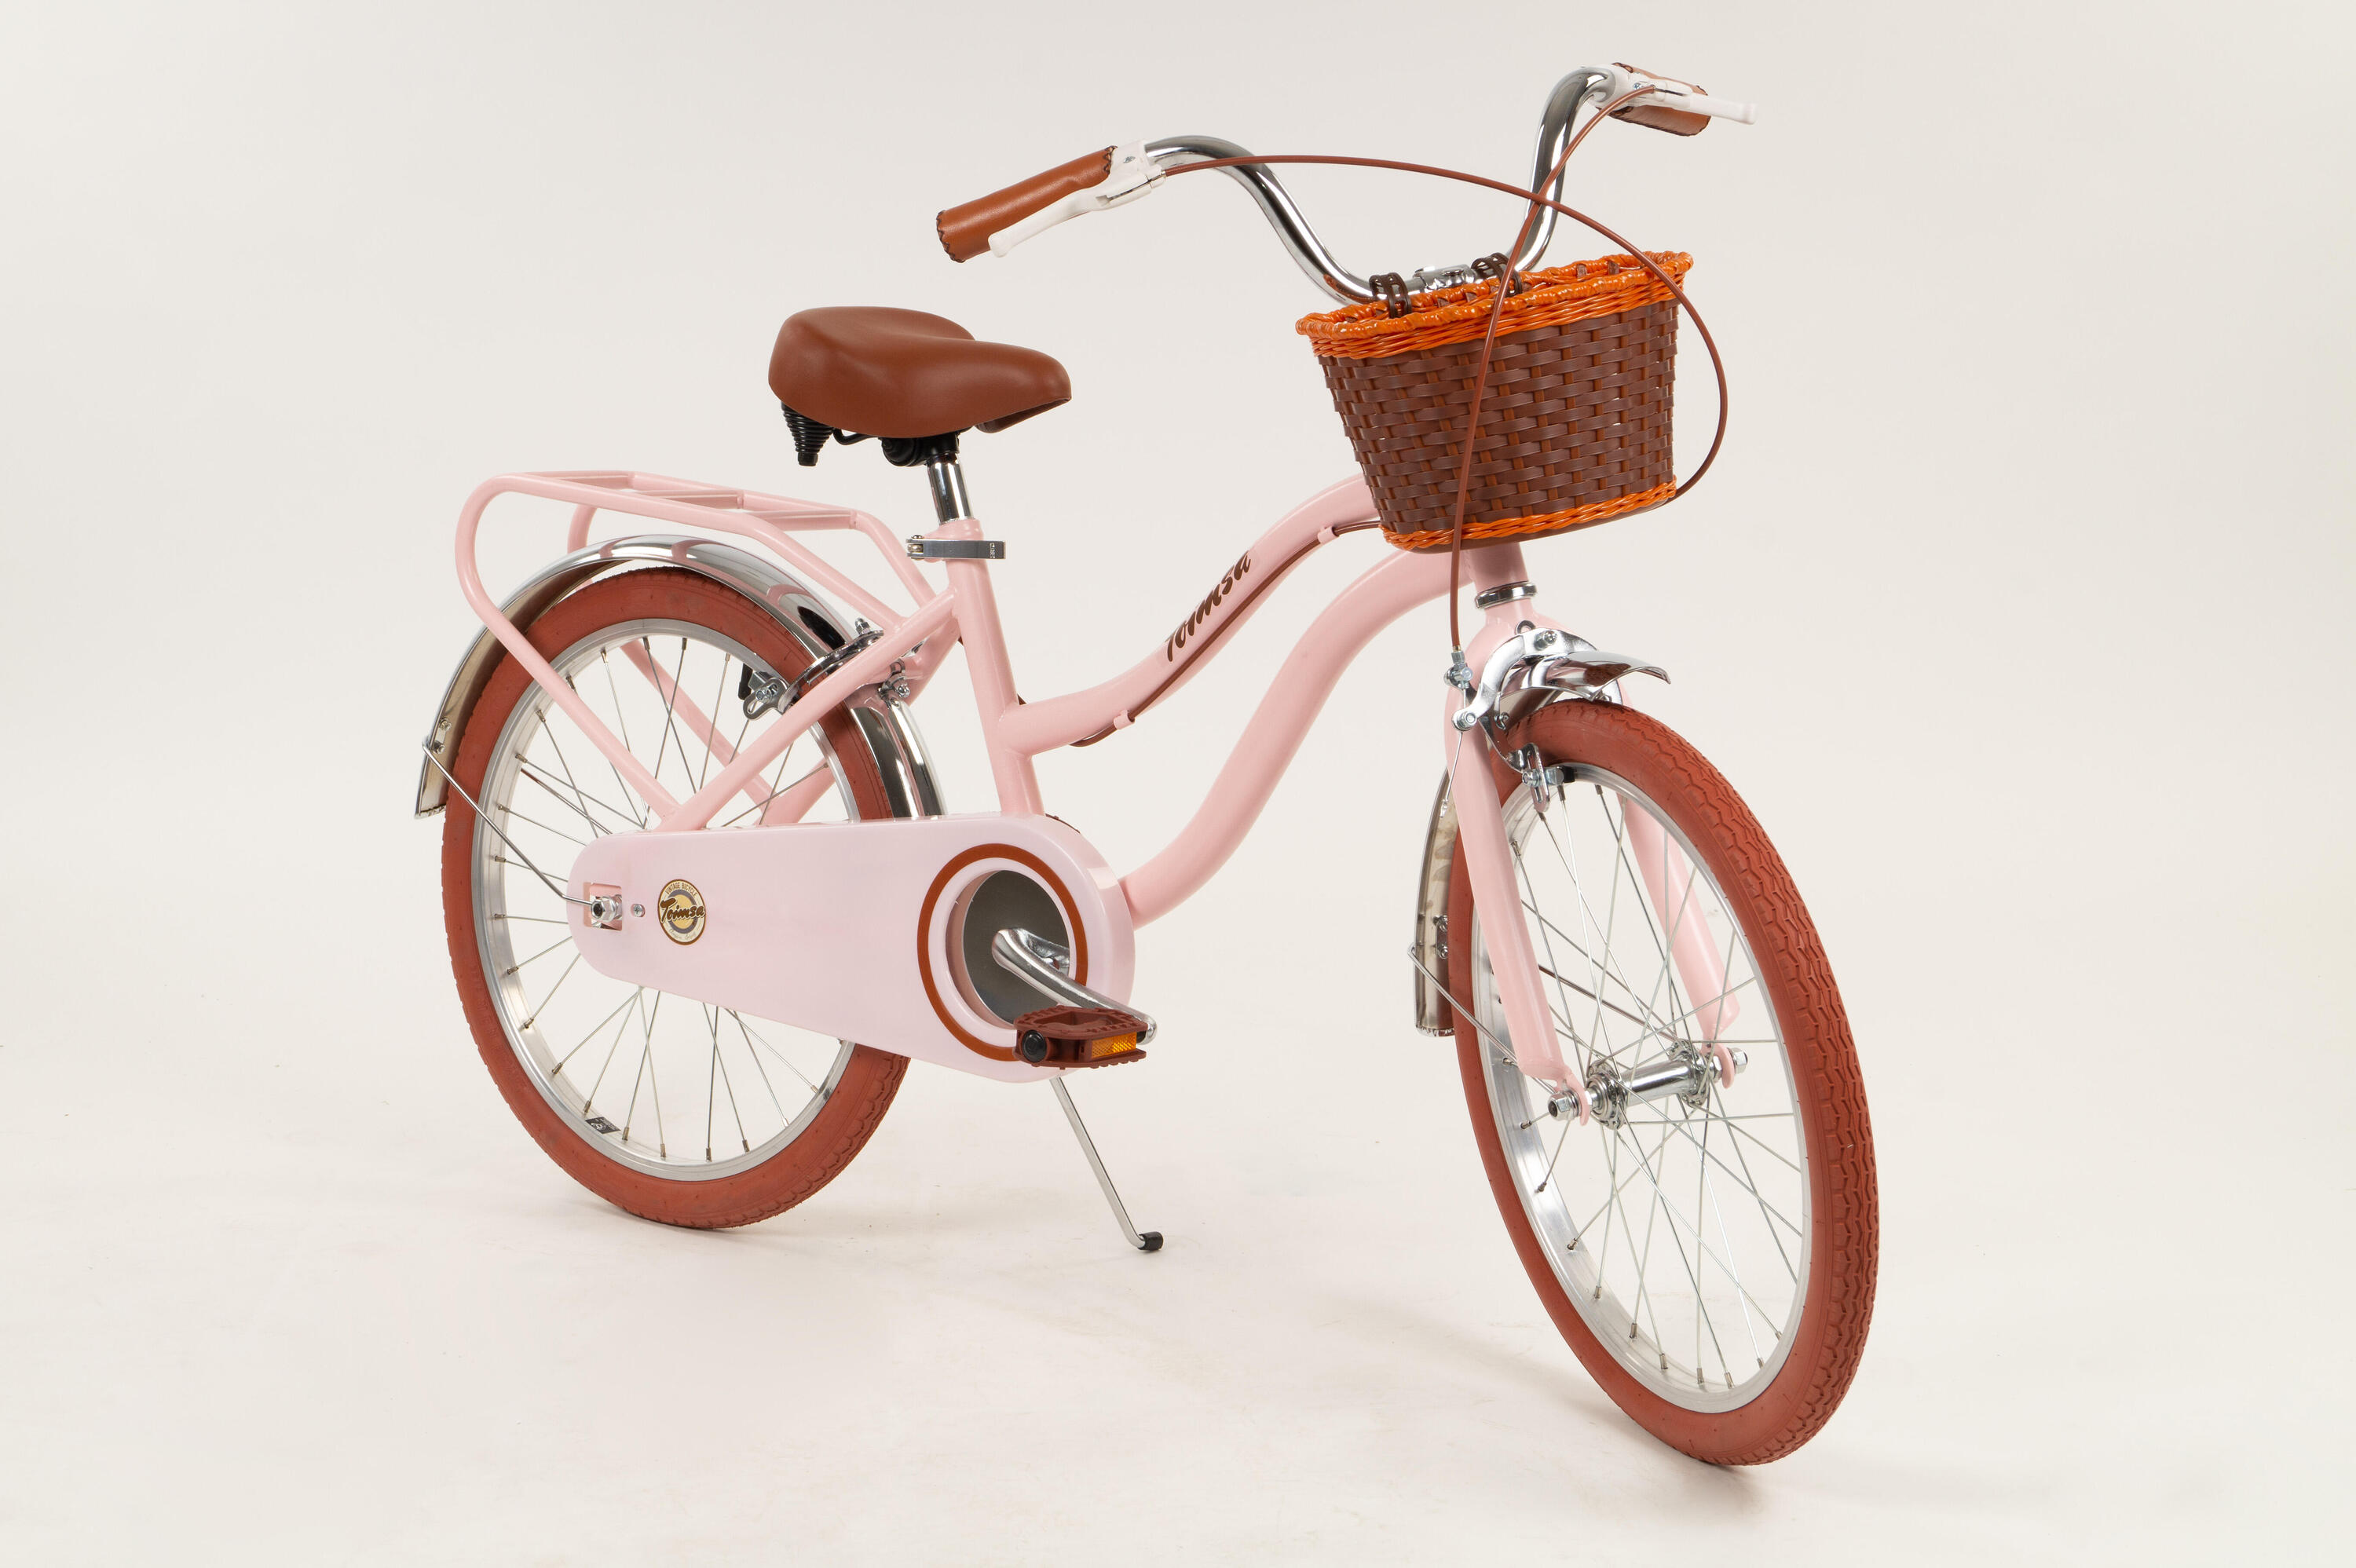 20" Vintage Bicycle - Pink 5/6